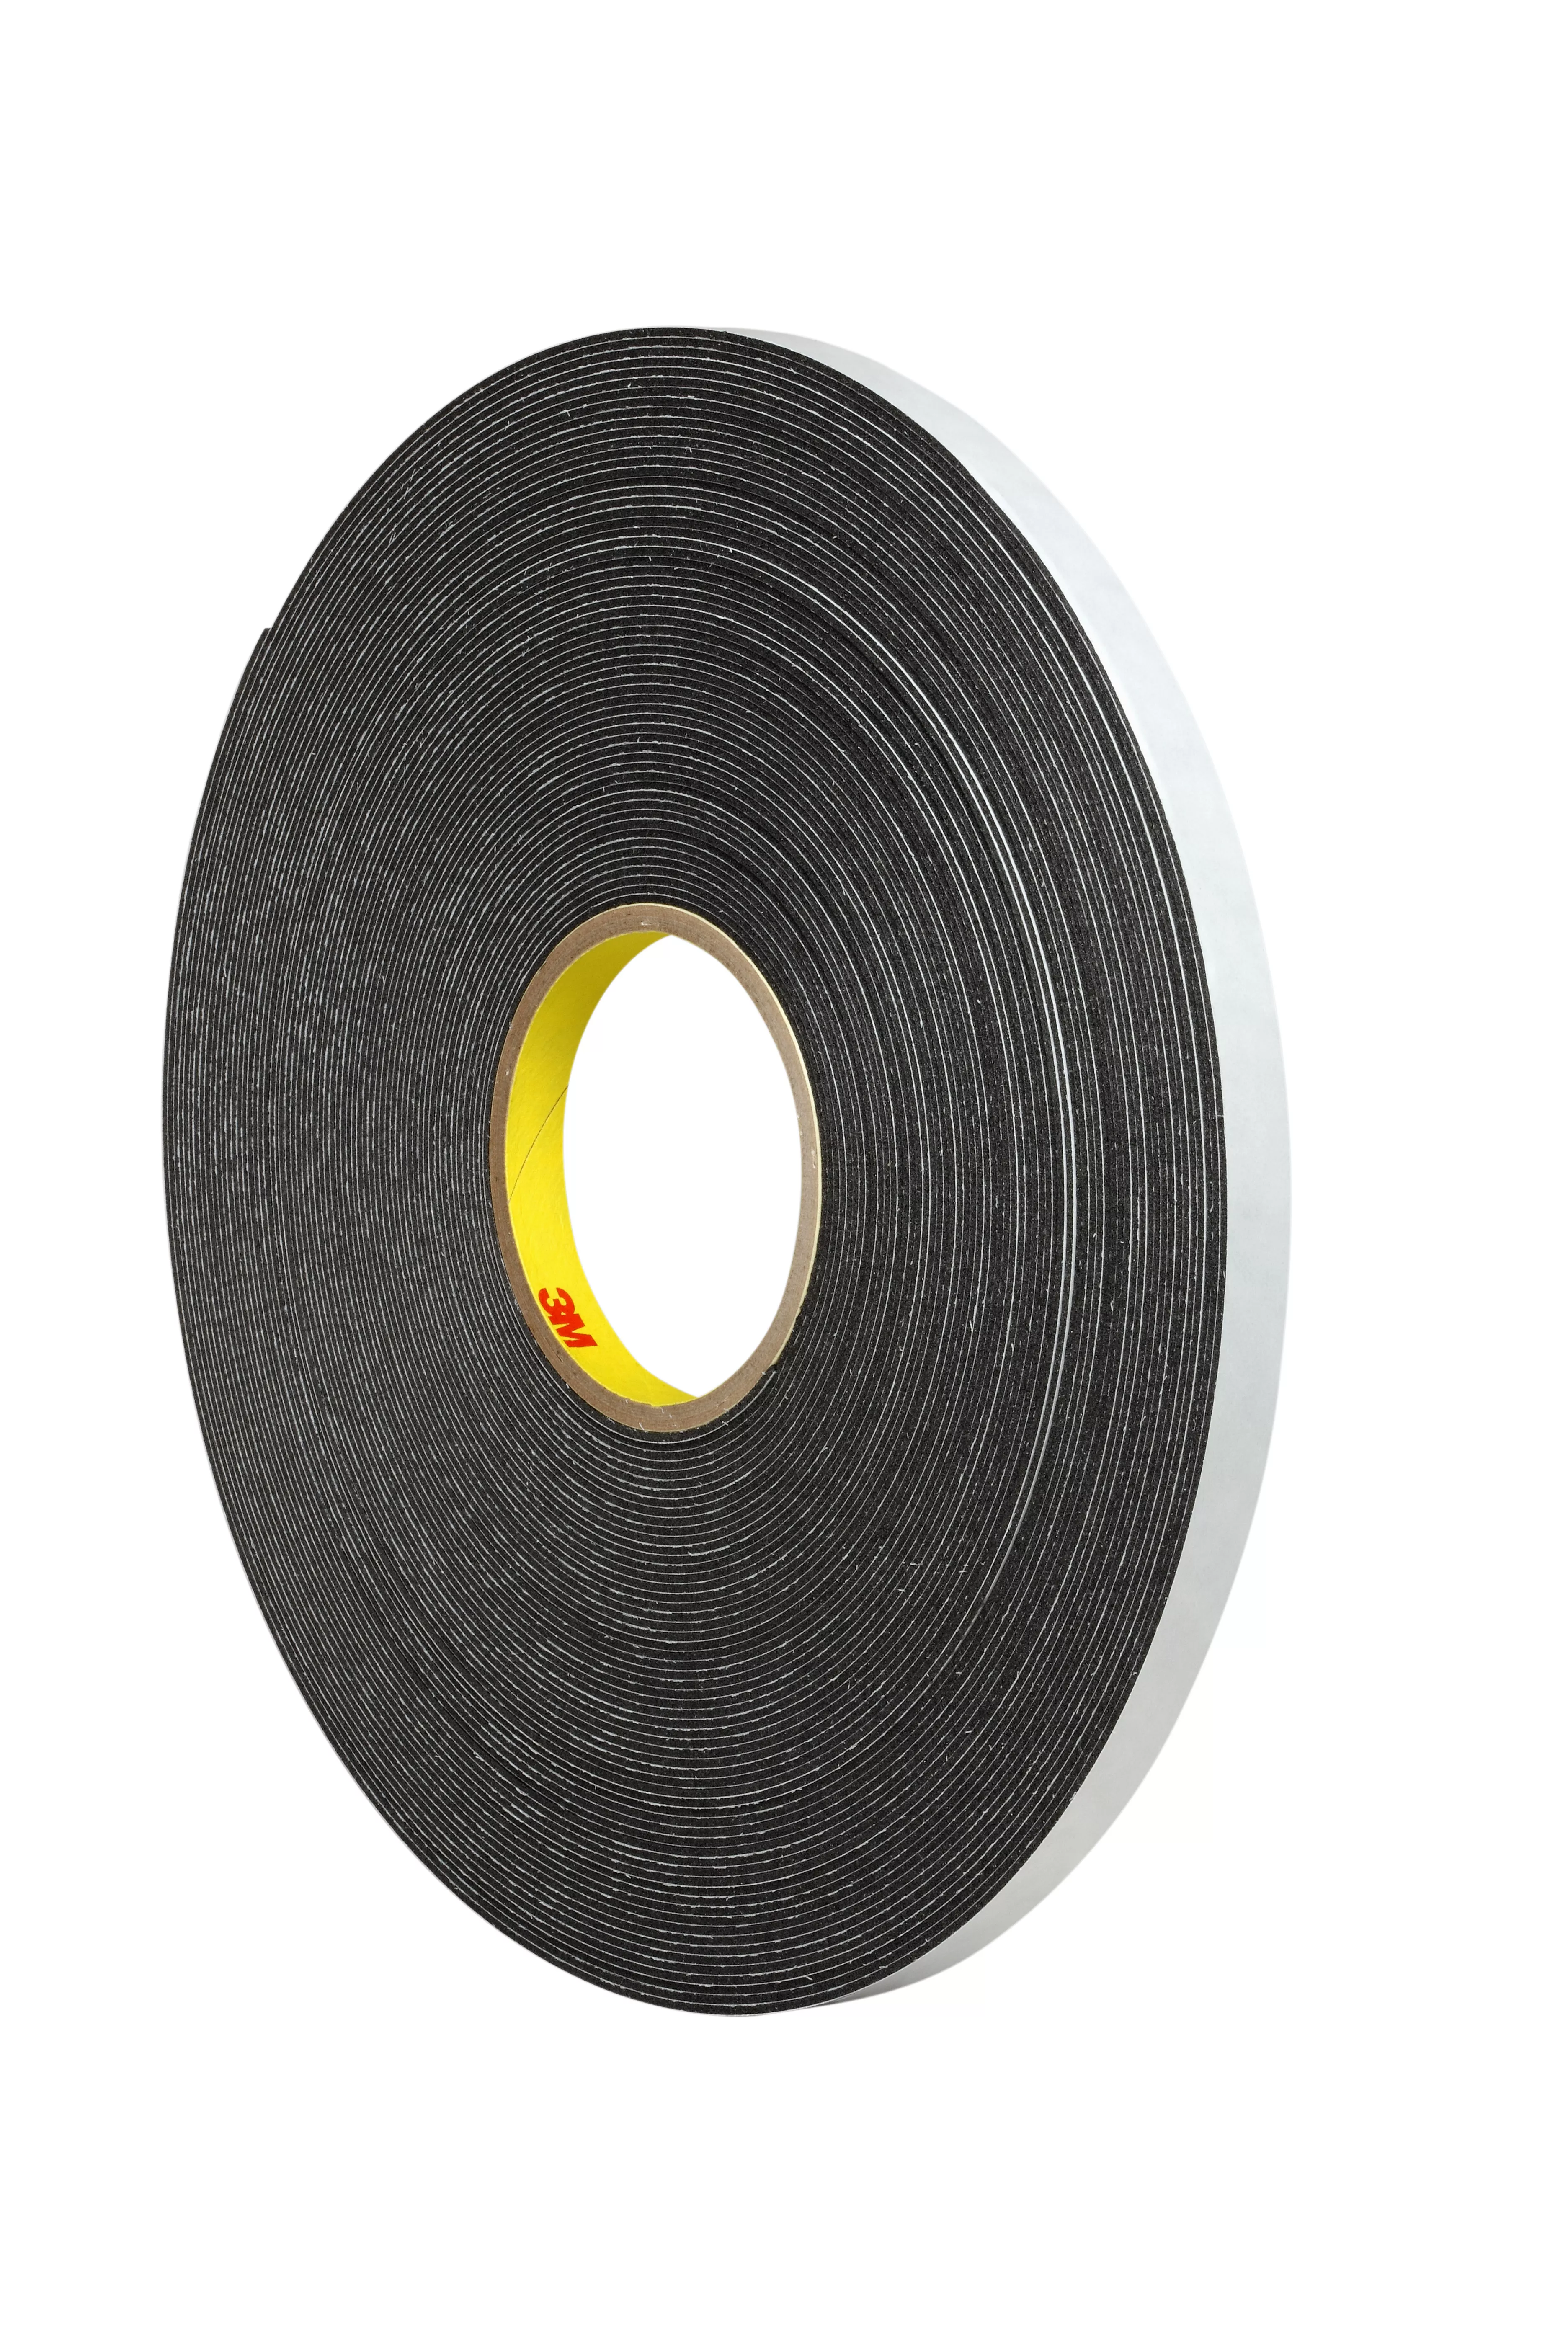 3M™ Double Coated Polyethylene Foam Tape 4466, Black, 3/4 in x 36 yd, 62
mil, 12 Roll/Case